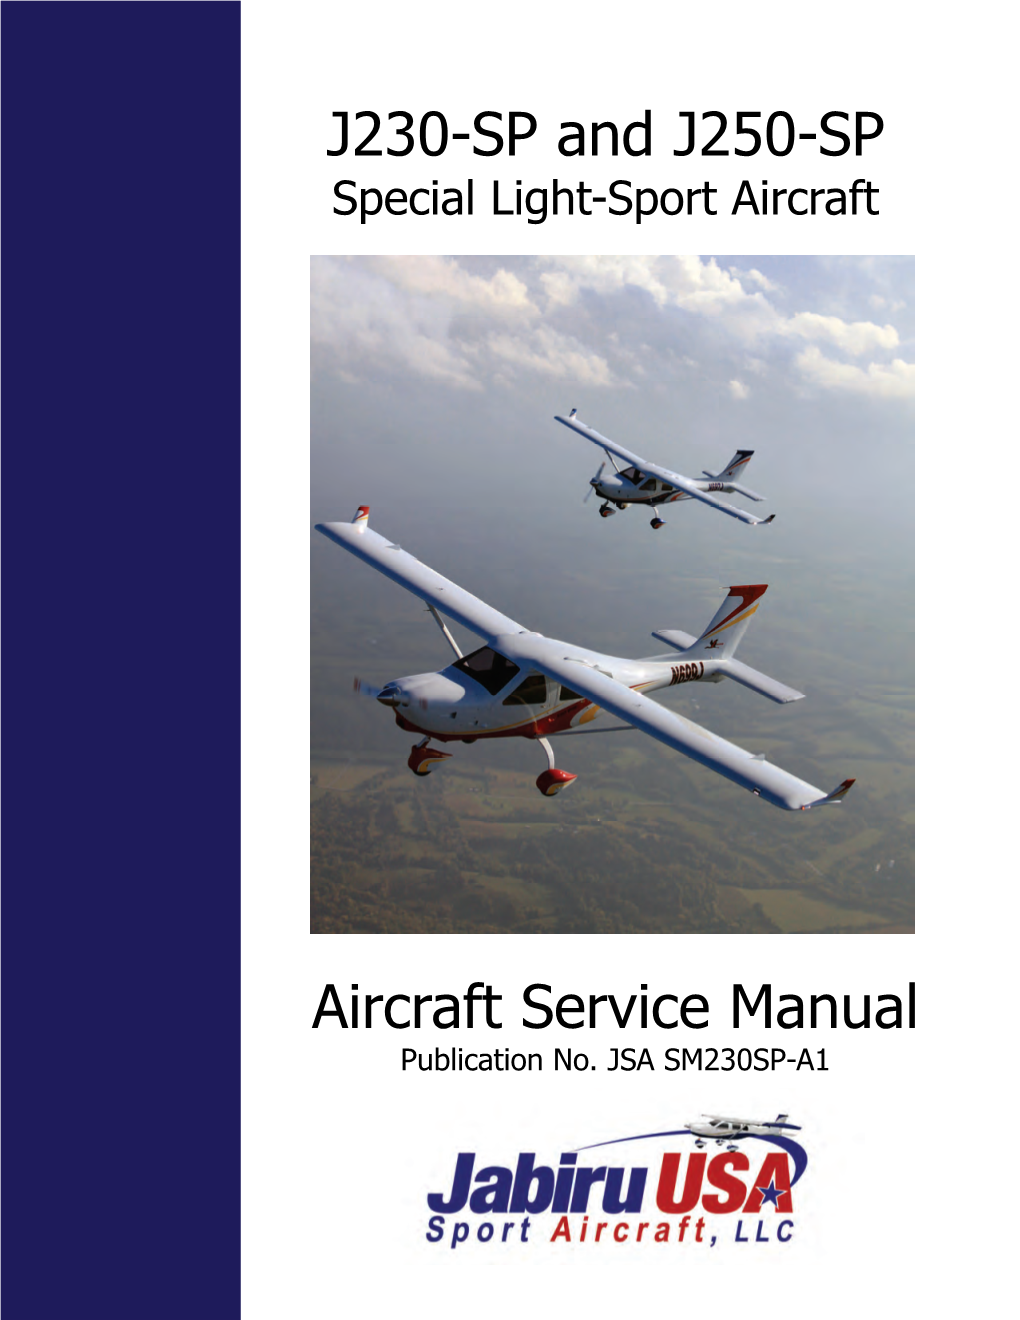 Aircraft Service Manual J230-SP and J250-SP